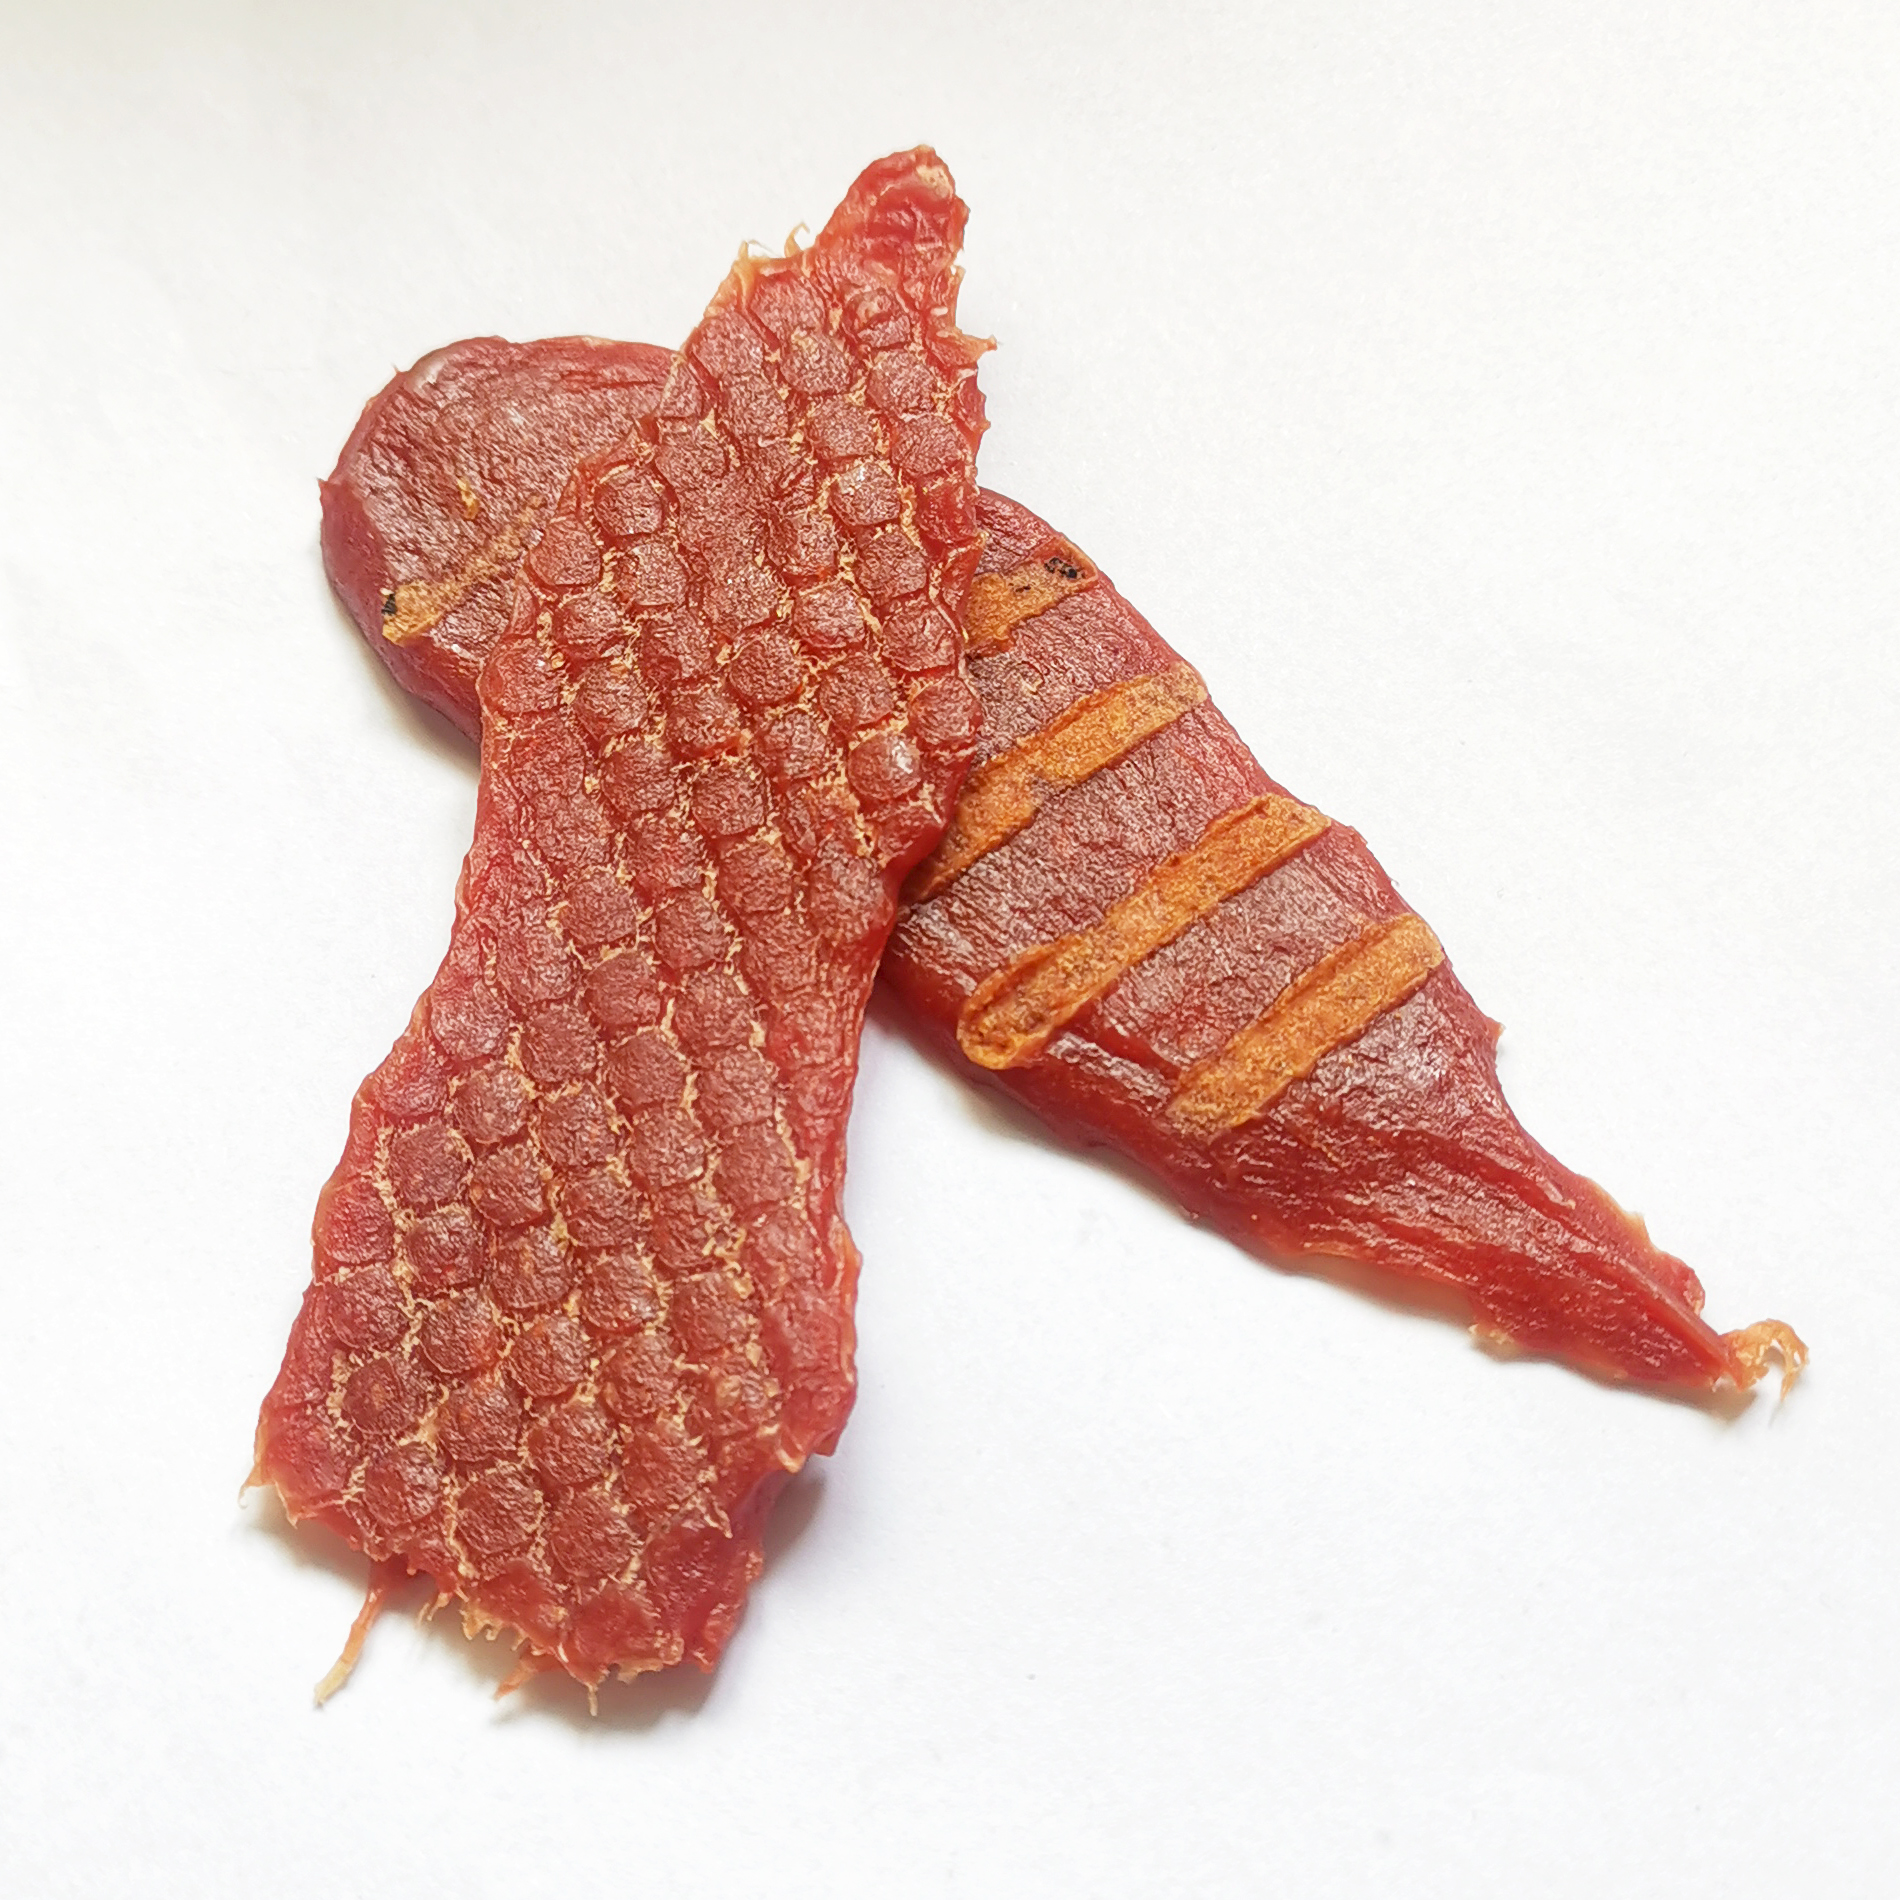 炭烧羊肉条-Roast mutton strips with charcoal